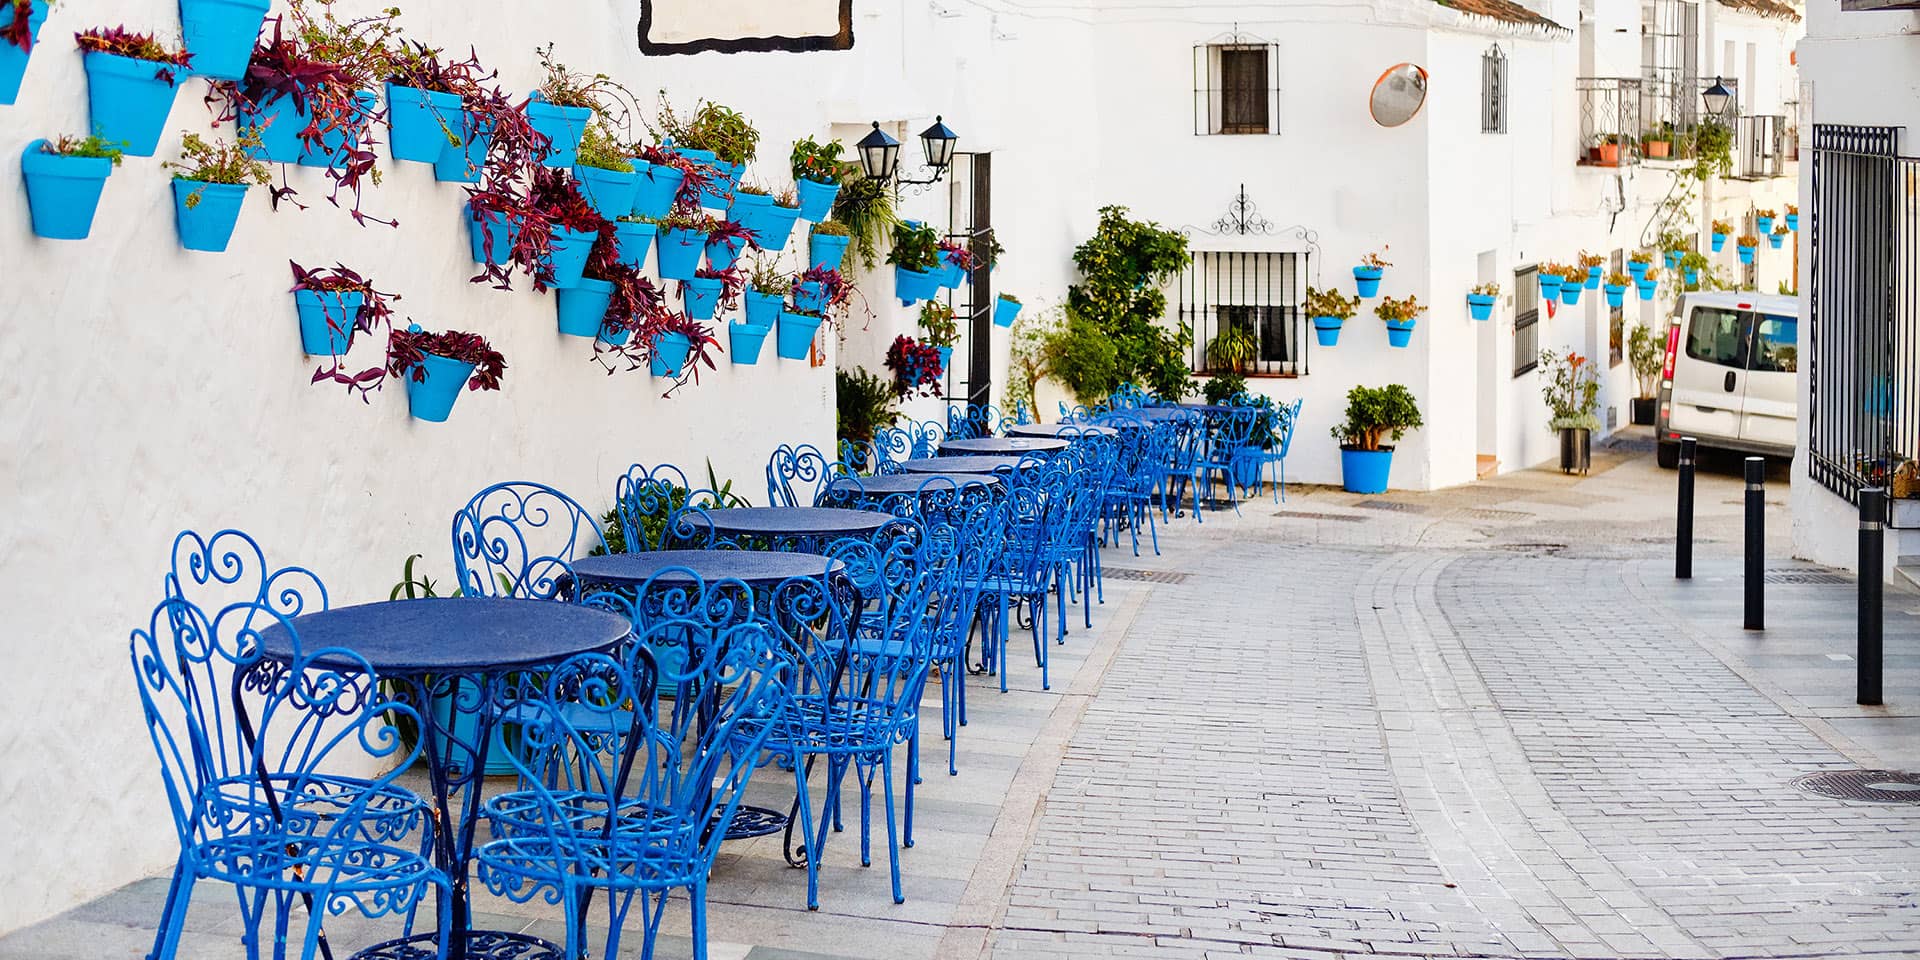 Billede af spansk cafe med blå stole og borde